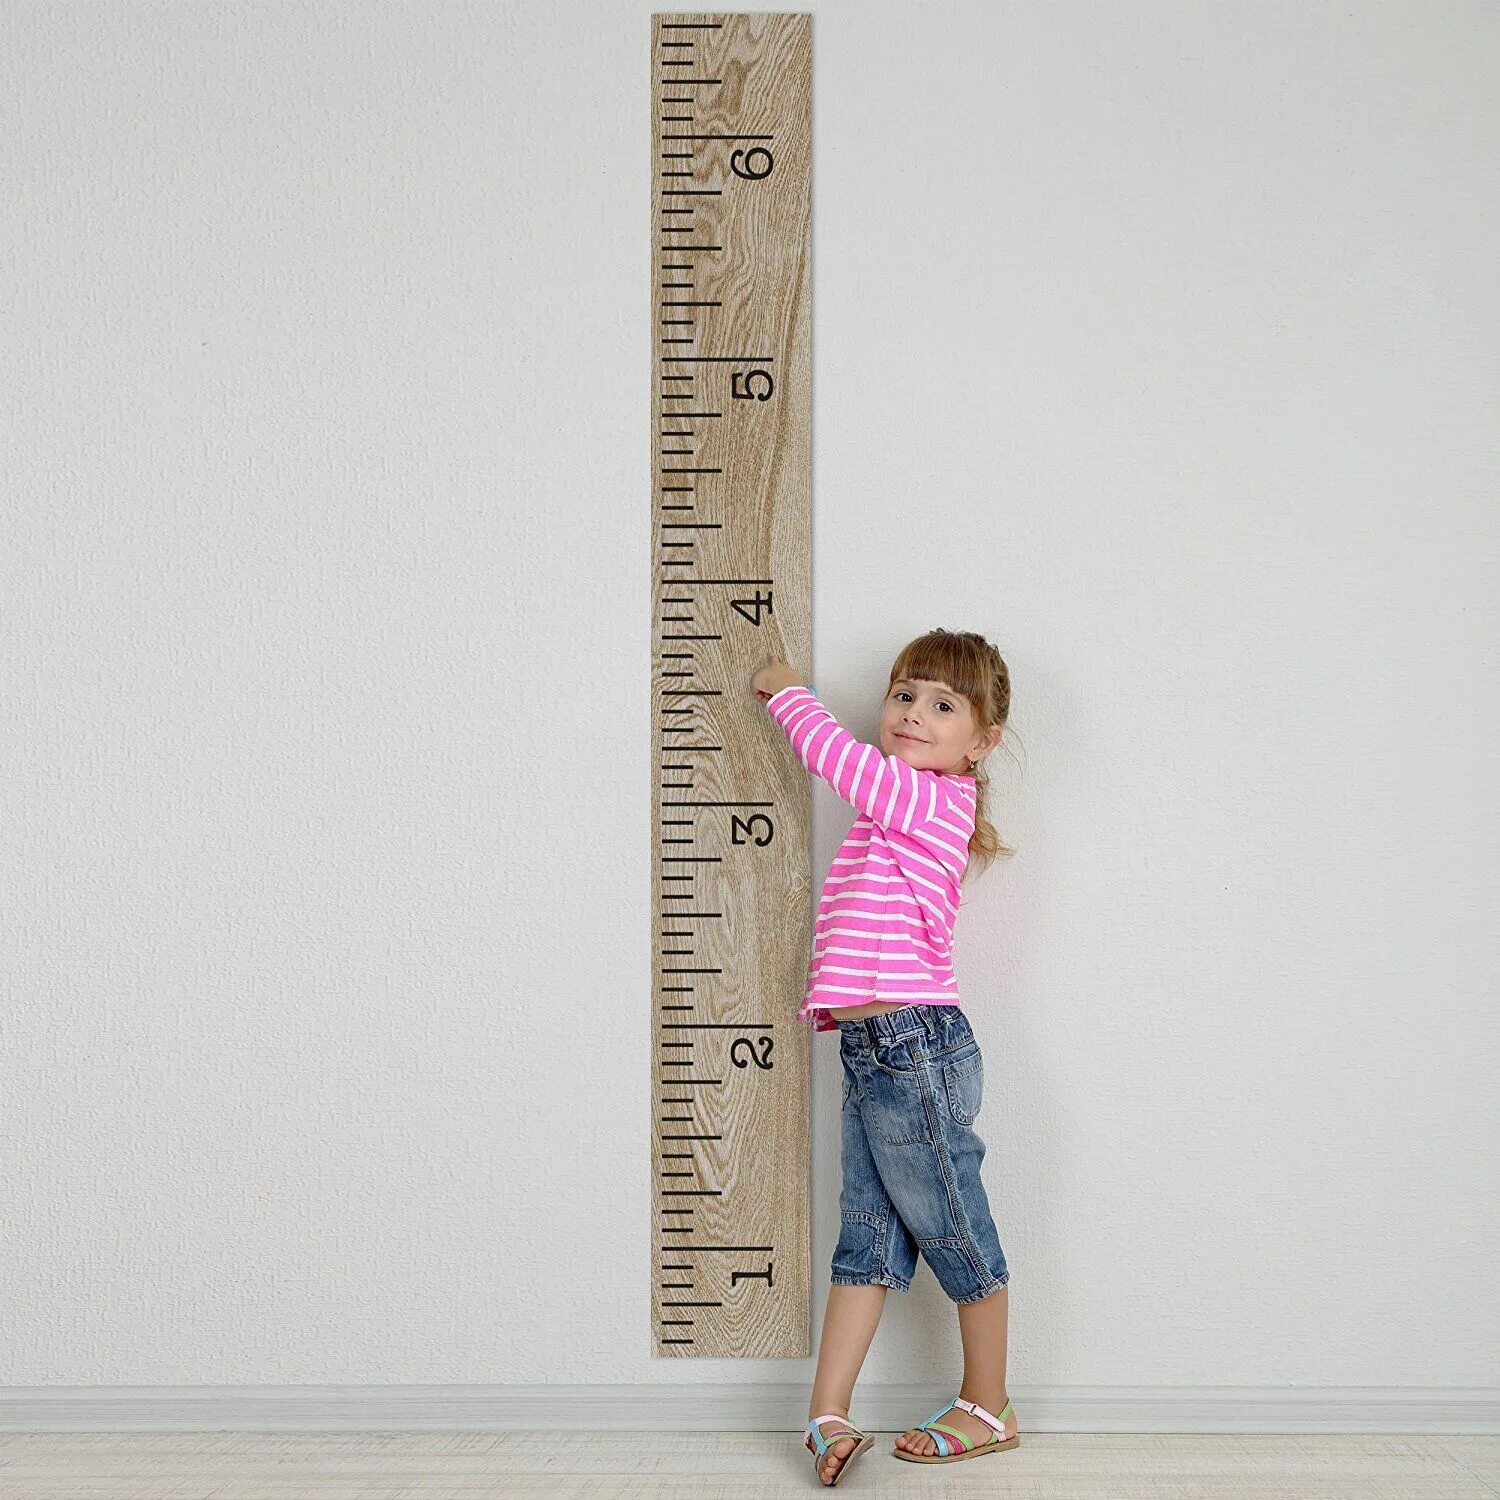 Метр детский. Измеритель роста. Линейка роста. Меряет рост. Линейка для детей.